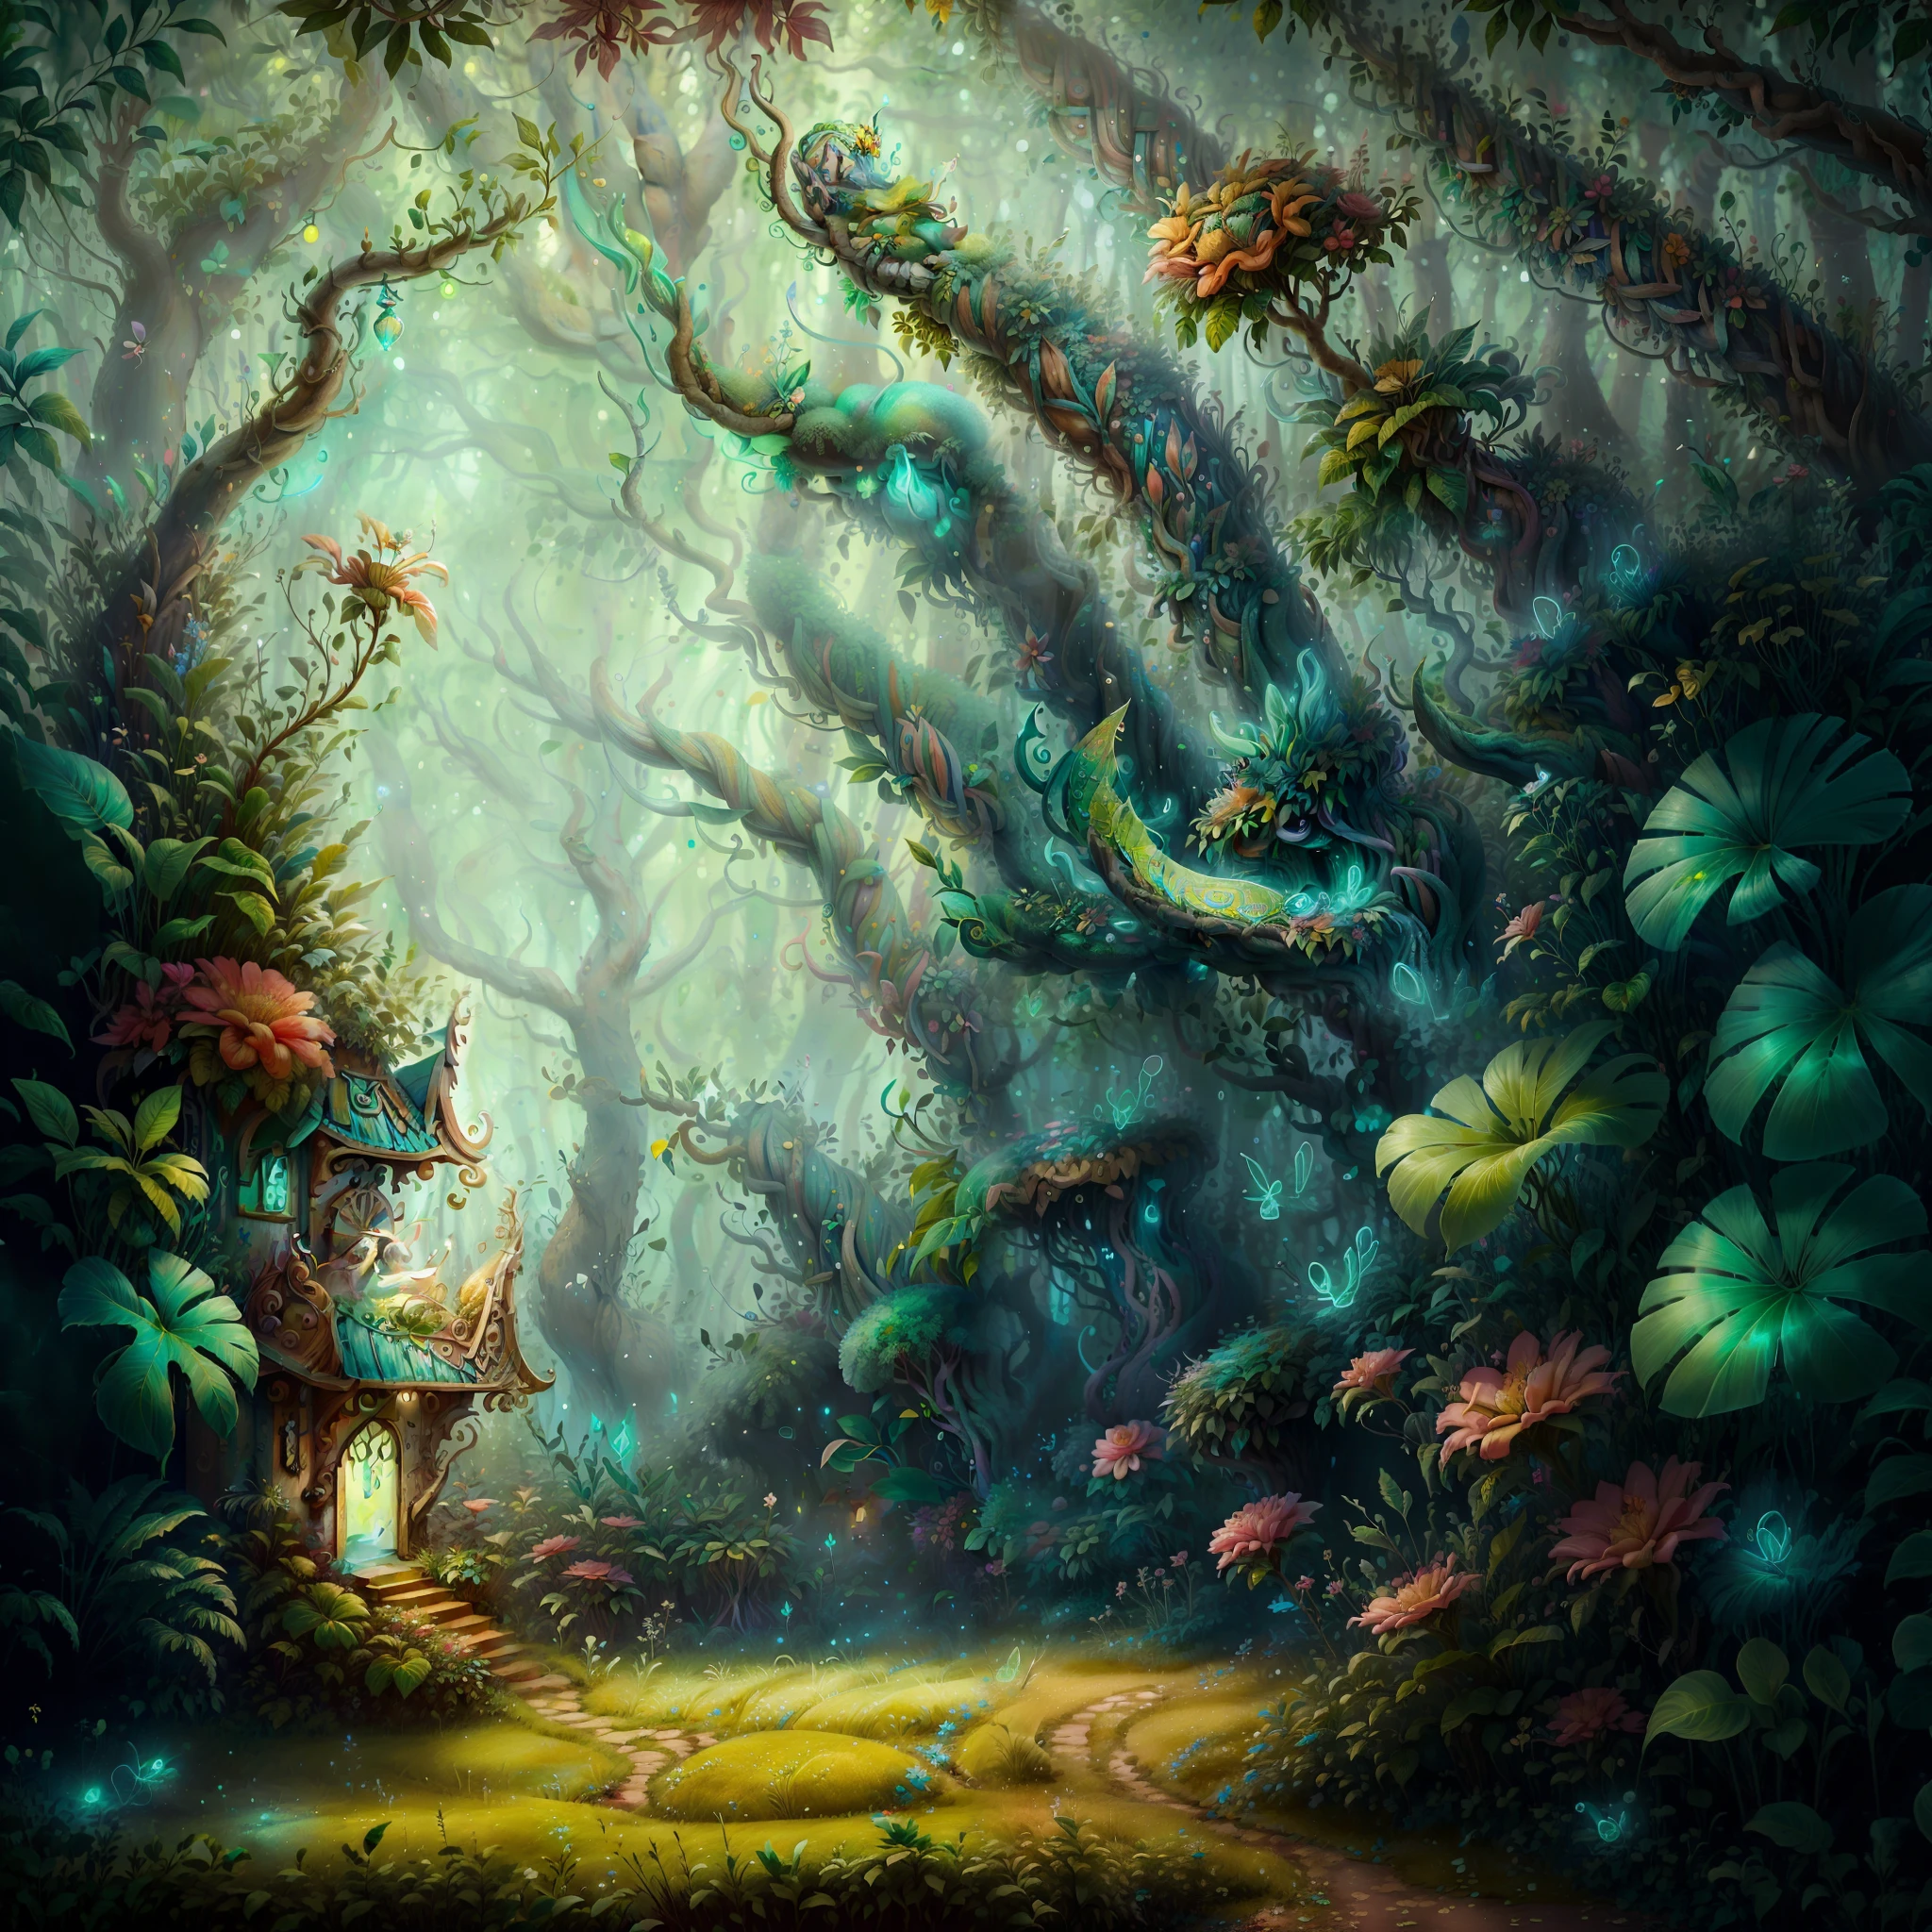 妖精の女性, ベリッシマ, 白い肌, 長くてブロンドの髪, 緑のドレス, 青い目, 魔法の森の中で, ネオンイエローのキノコ